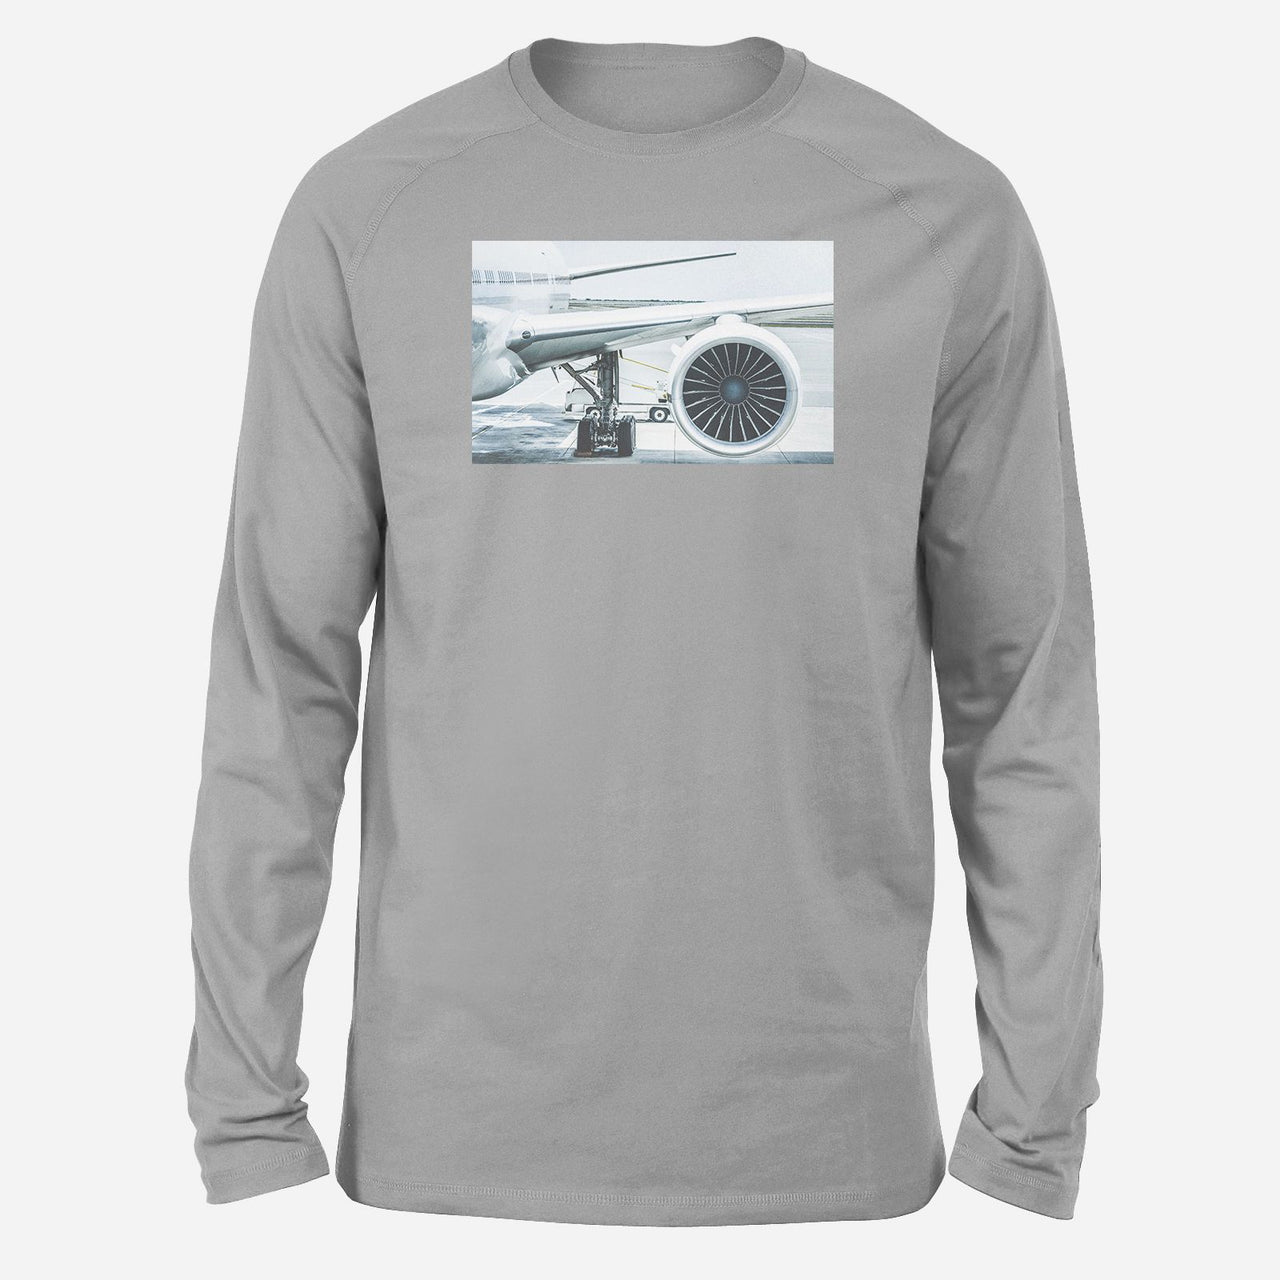 Amazing Aircraft & Engine Designed Long-Sleeve T-Shirts